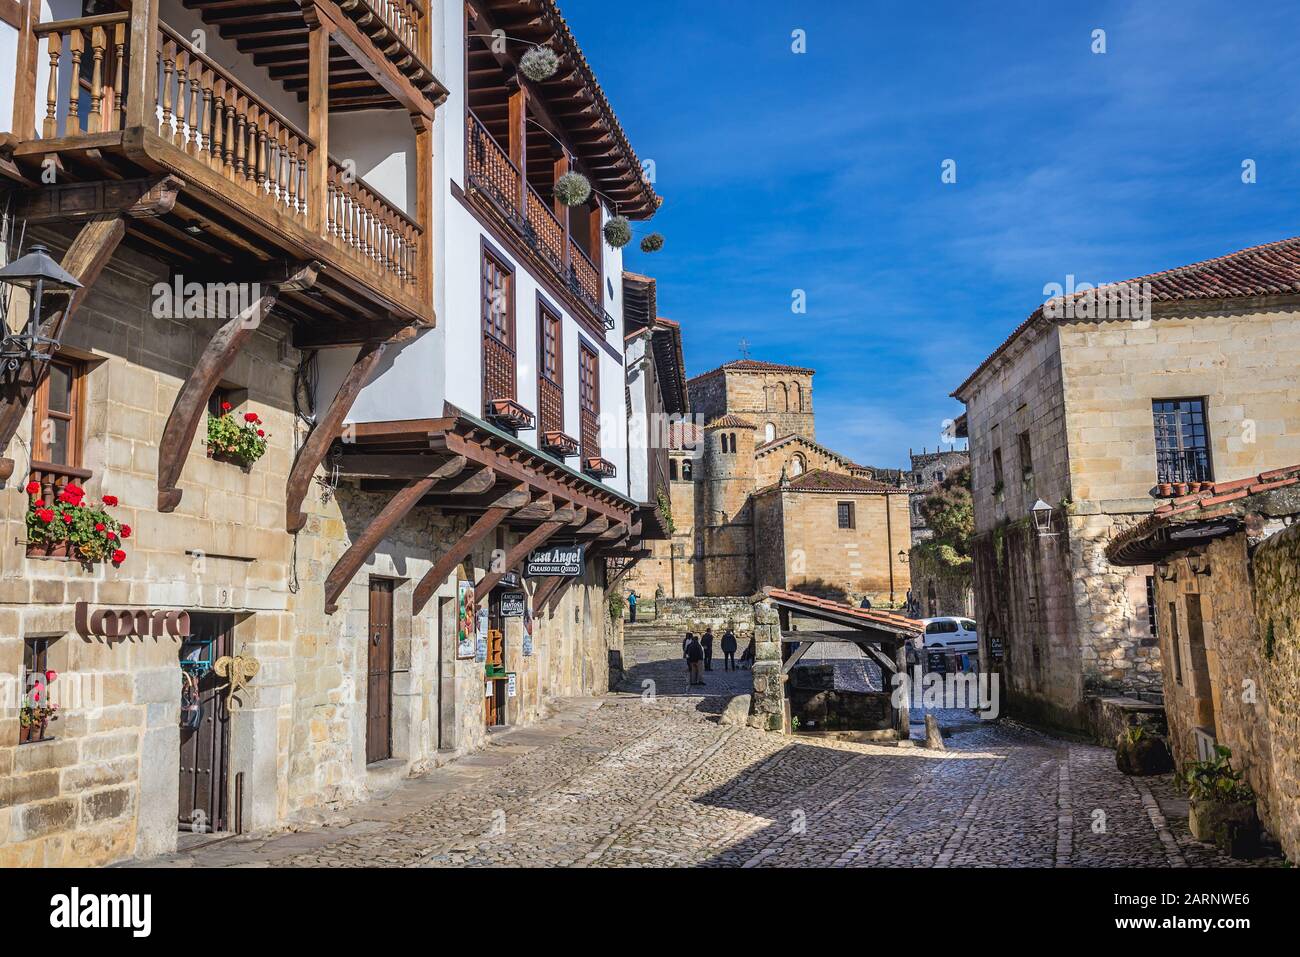 Ciudad histórica de Santillana del Mar situada en la región de Cantabria, con vistas a la colegiata románica y al claustro de Santa Juliana Foto de stock